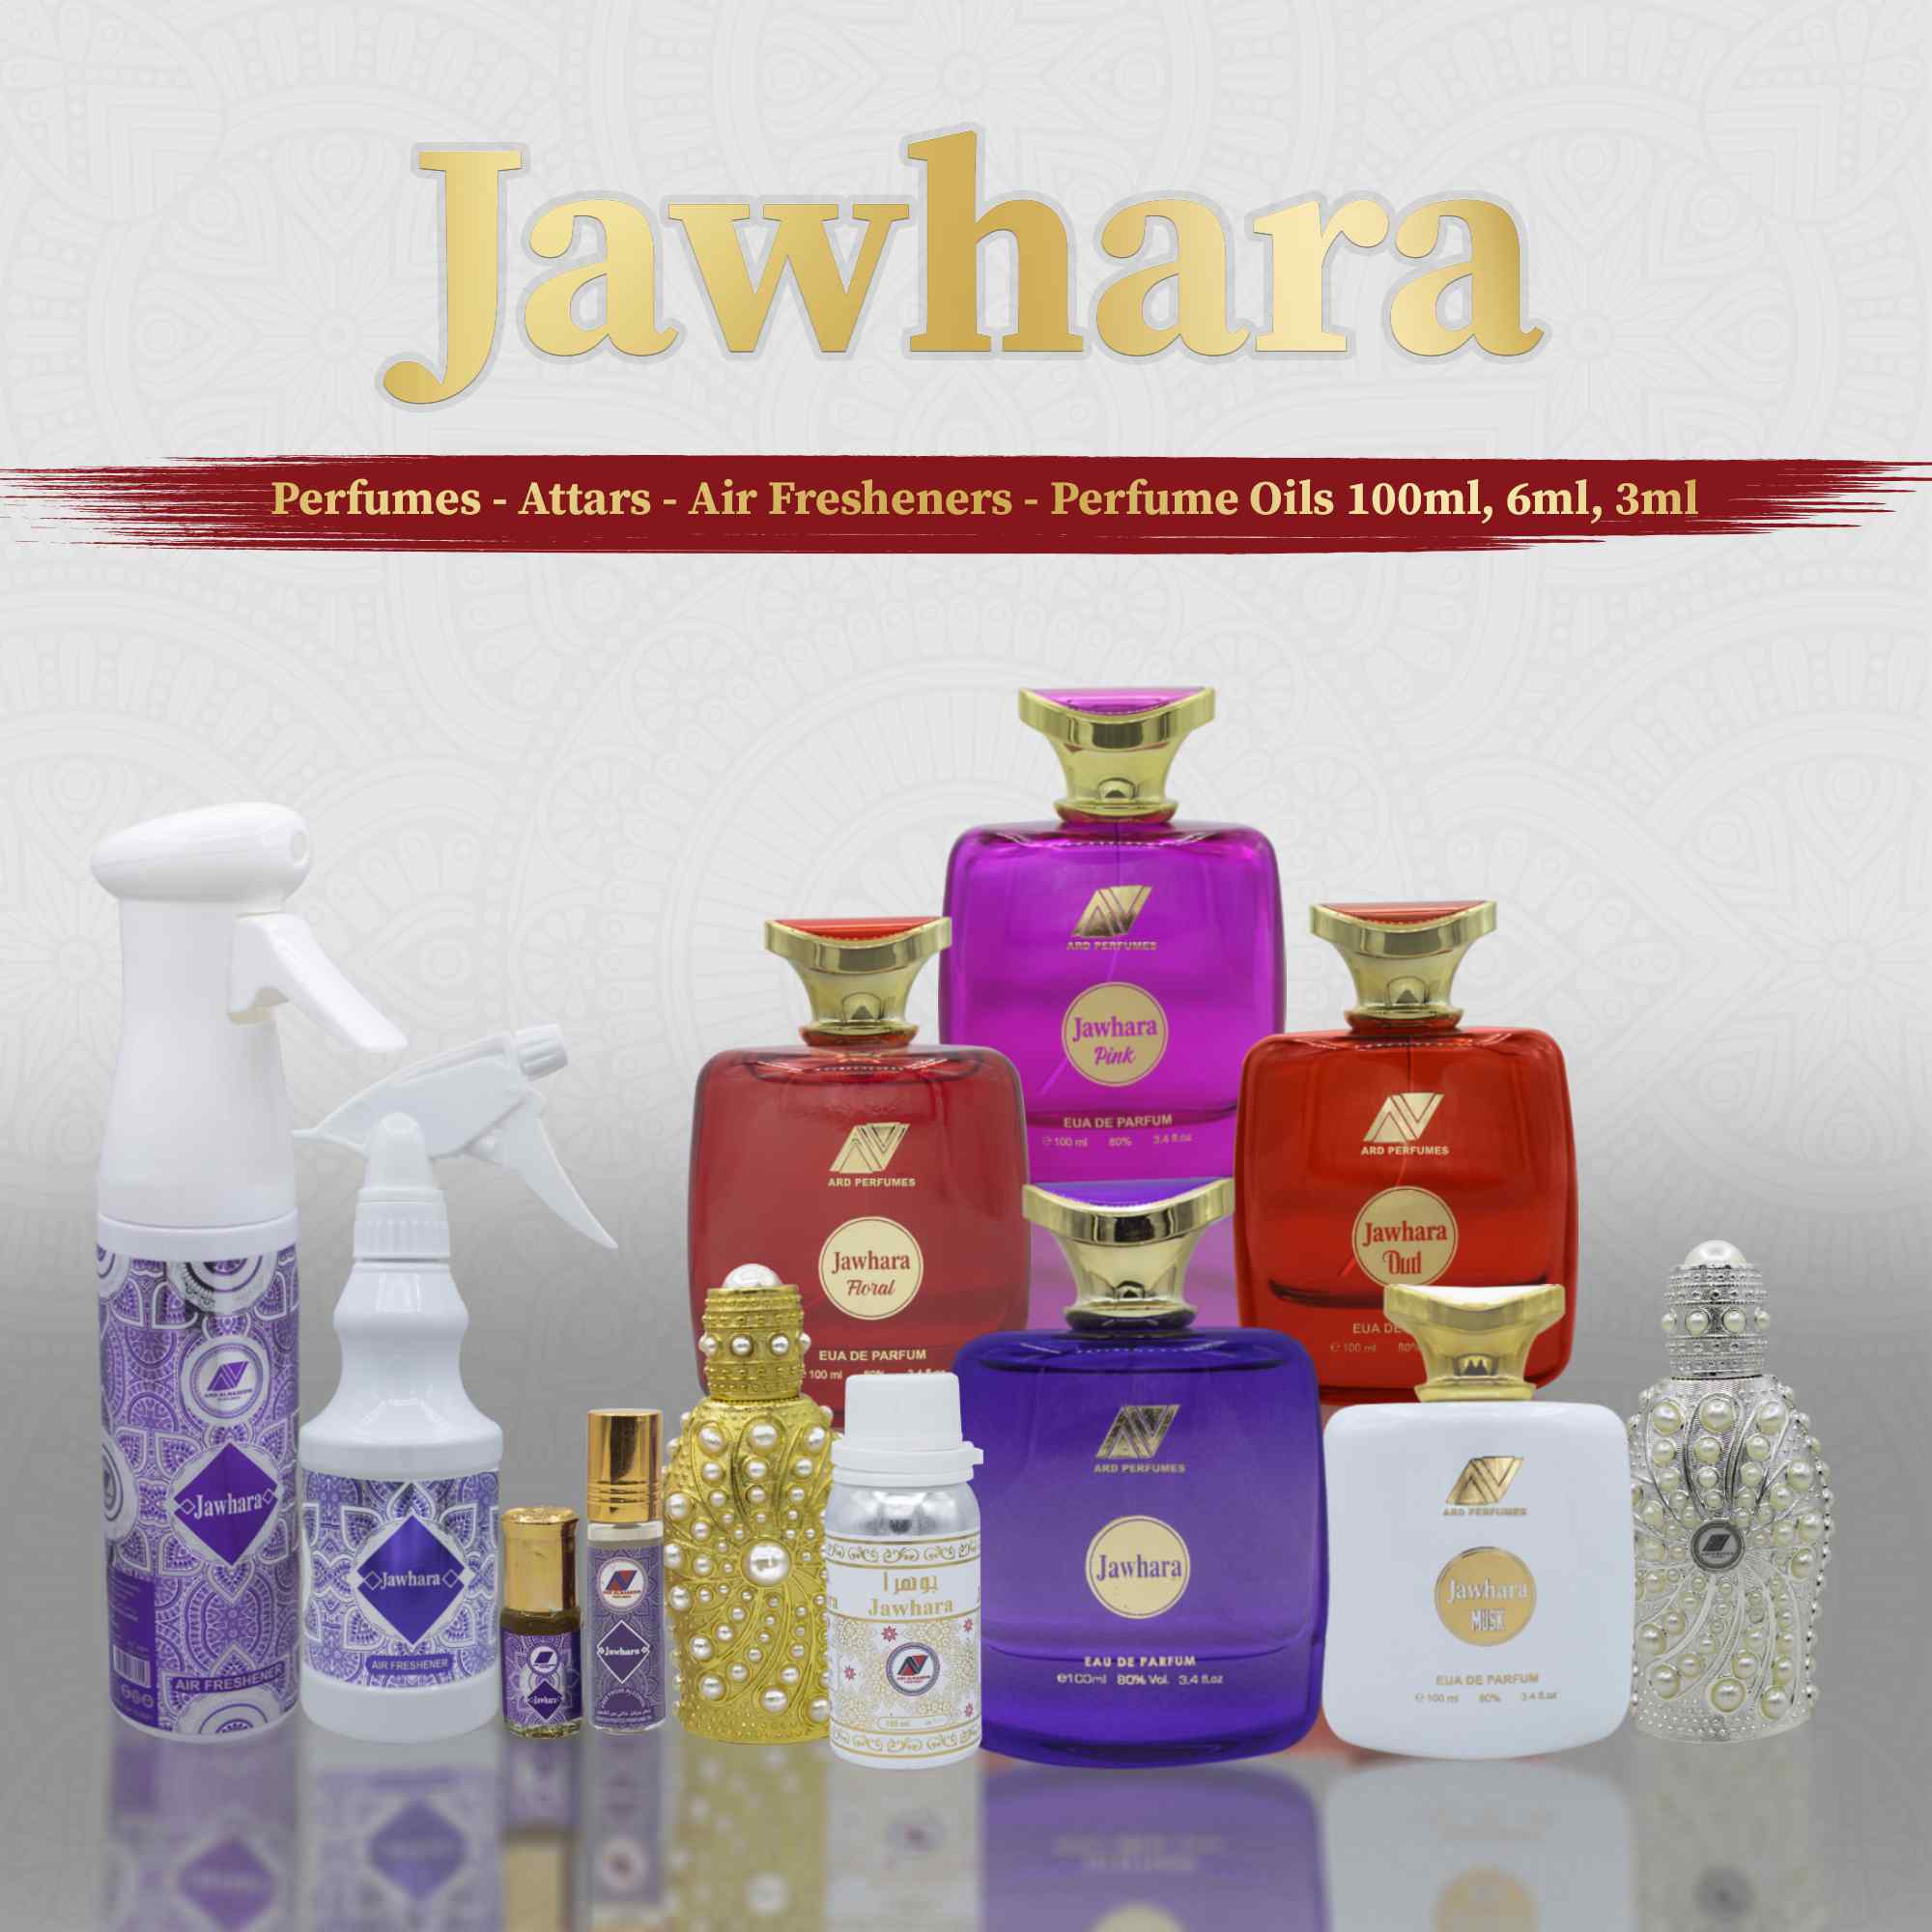 Jawhara Perfume, Jawhara Attar, Jawhara 100ml, Jawhara Air Freshener, Jawhara Oud, Musk